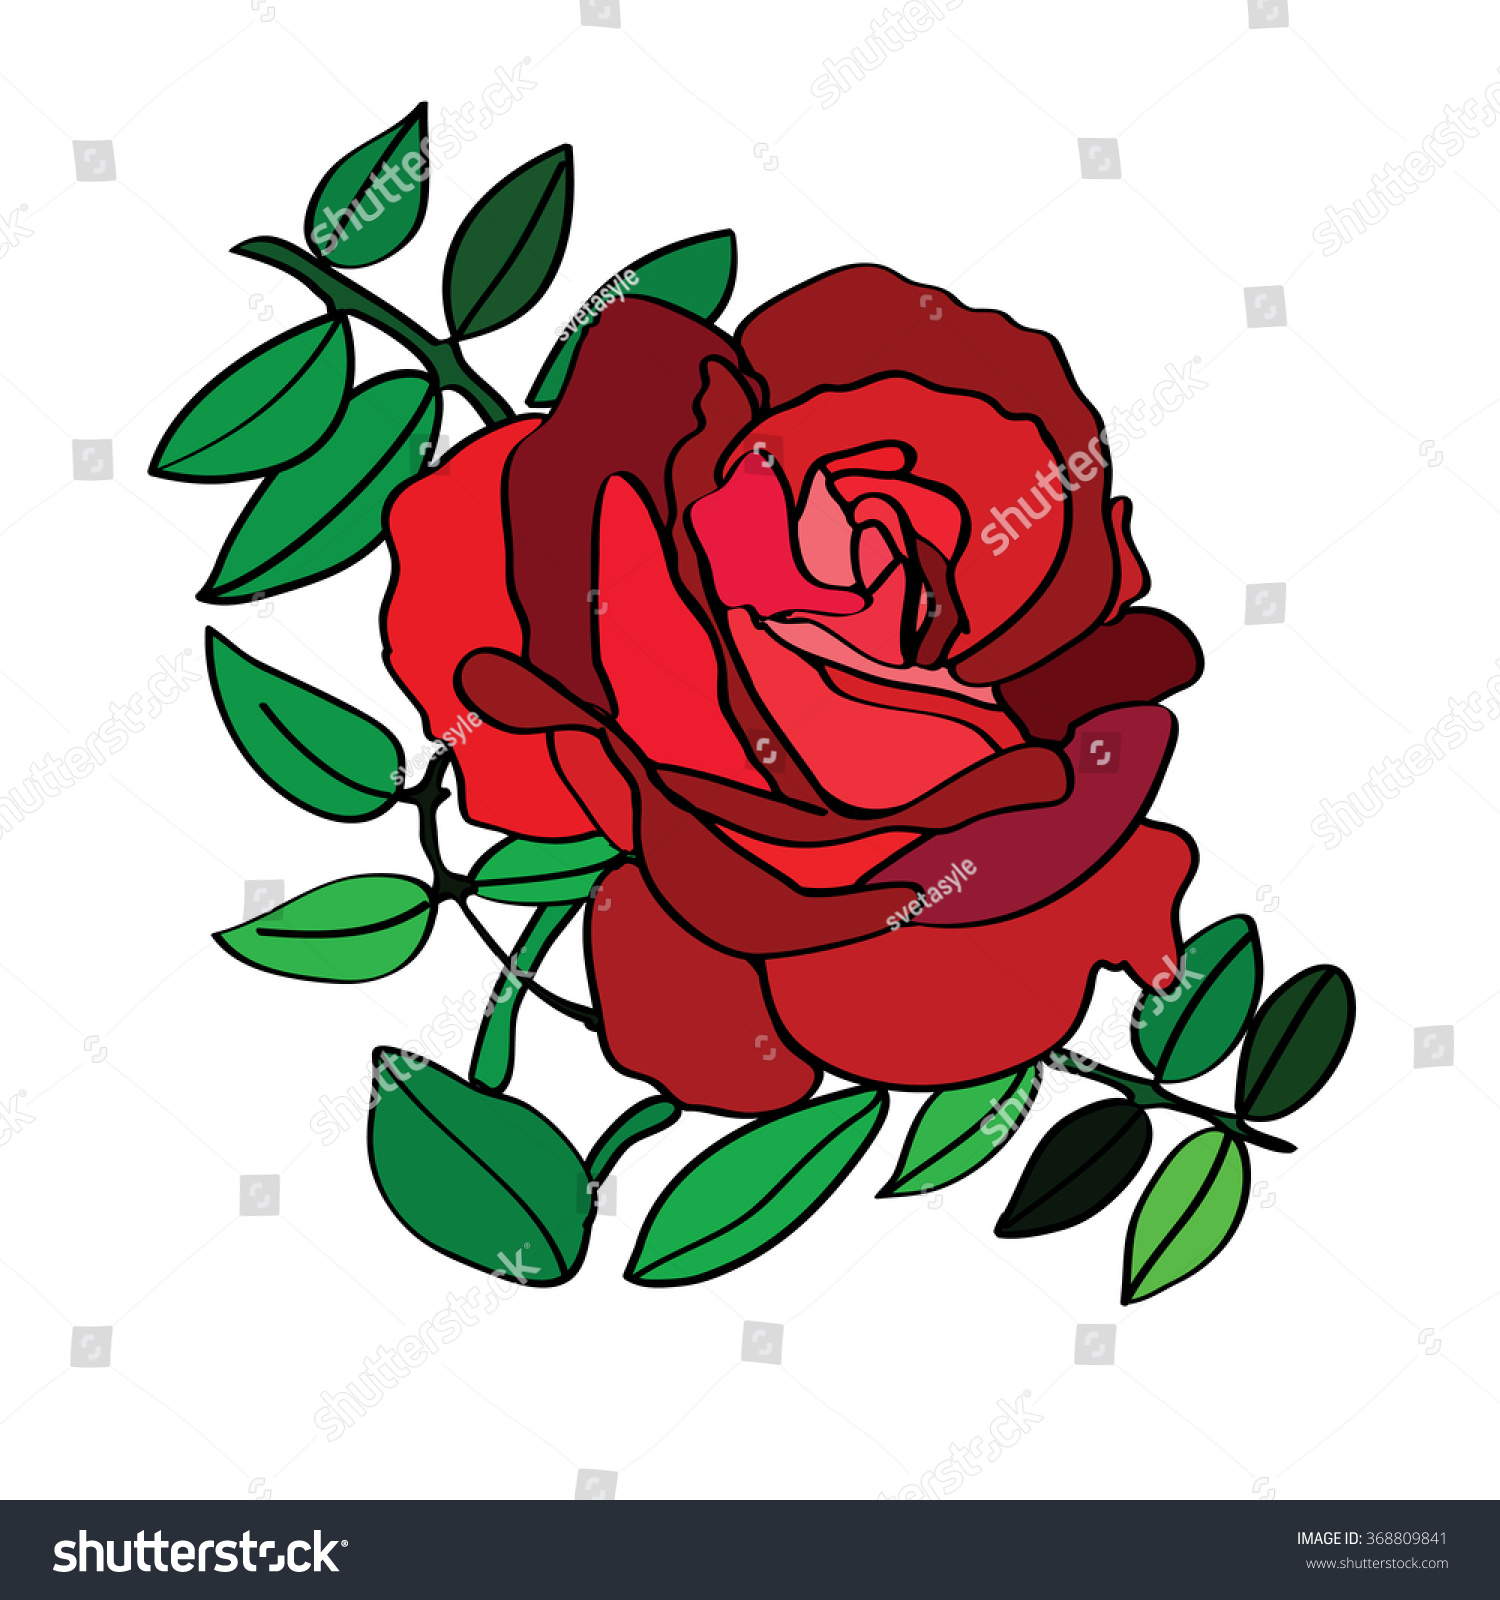 Gambar rose